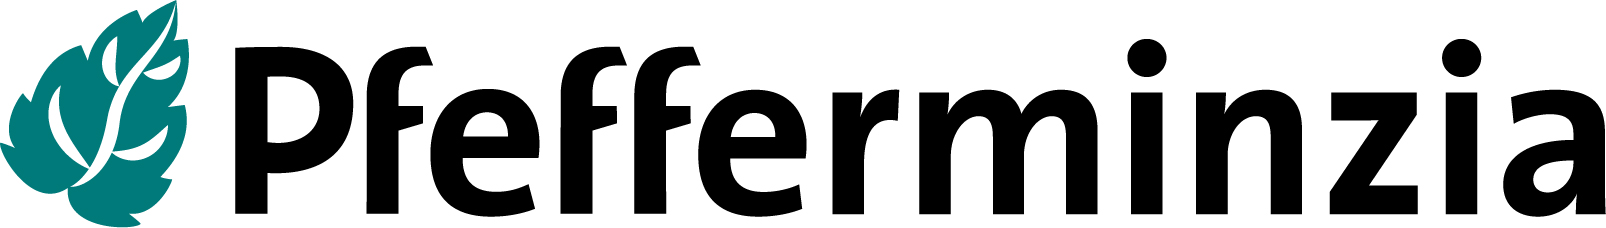 Pfefferminzia_Logo_rgb